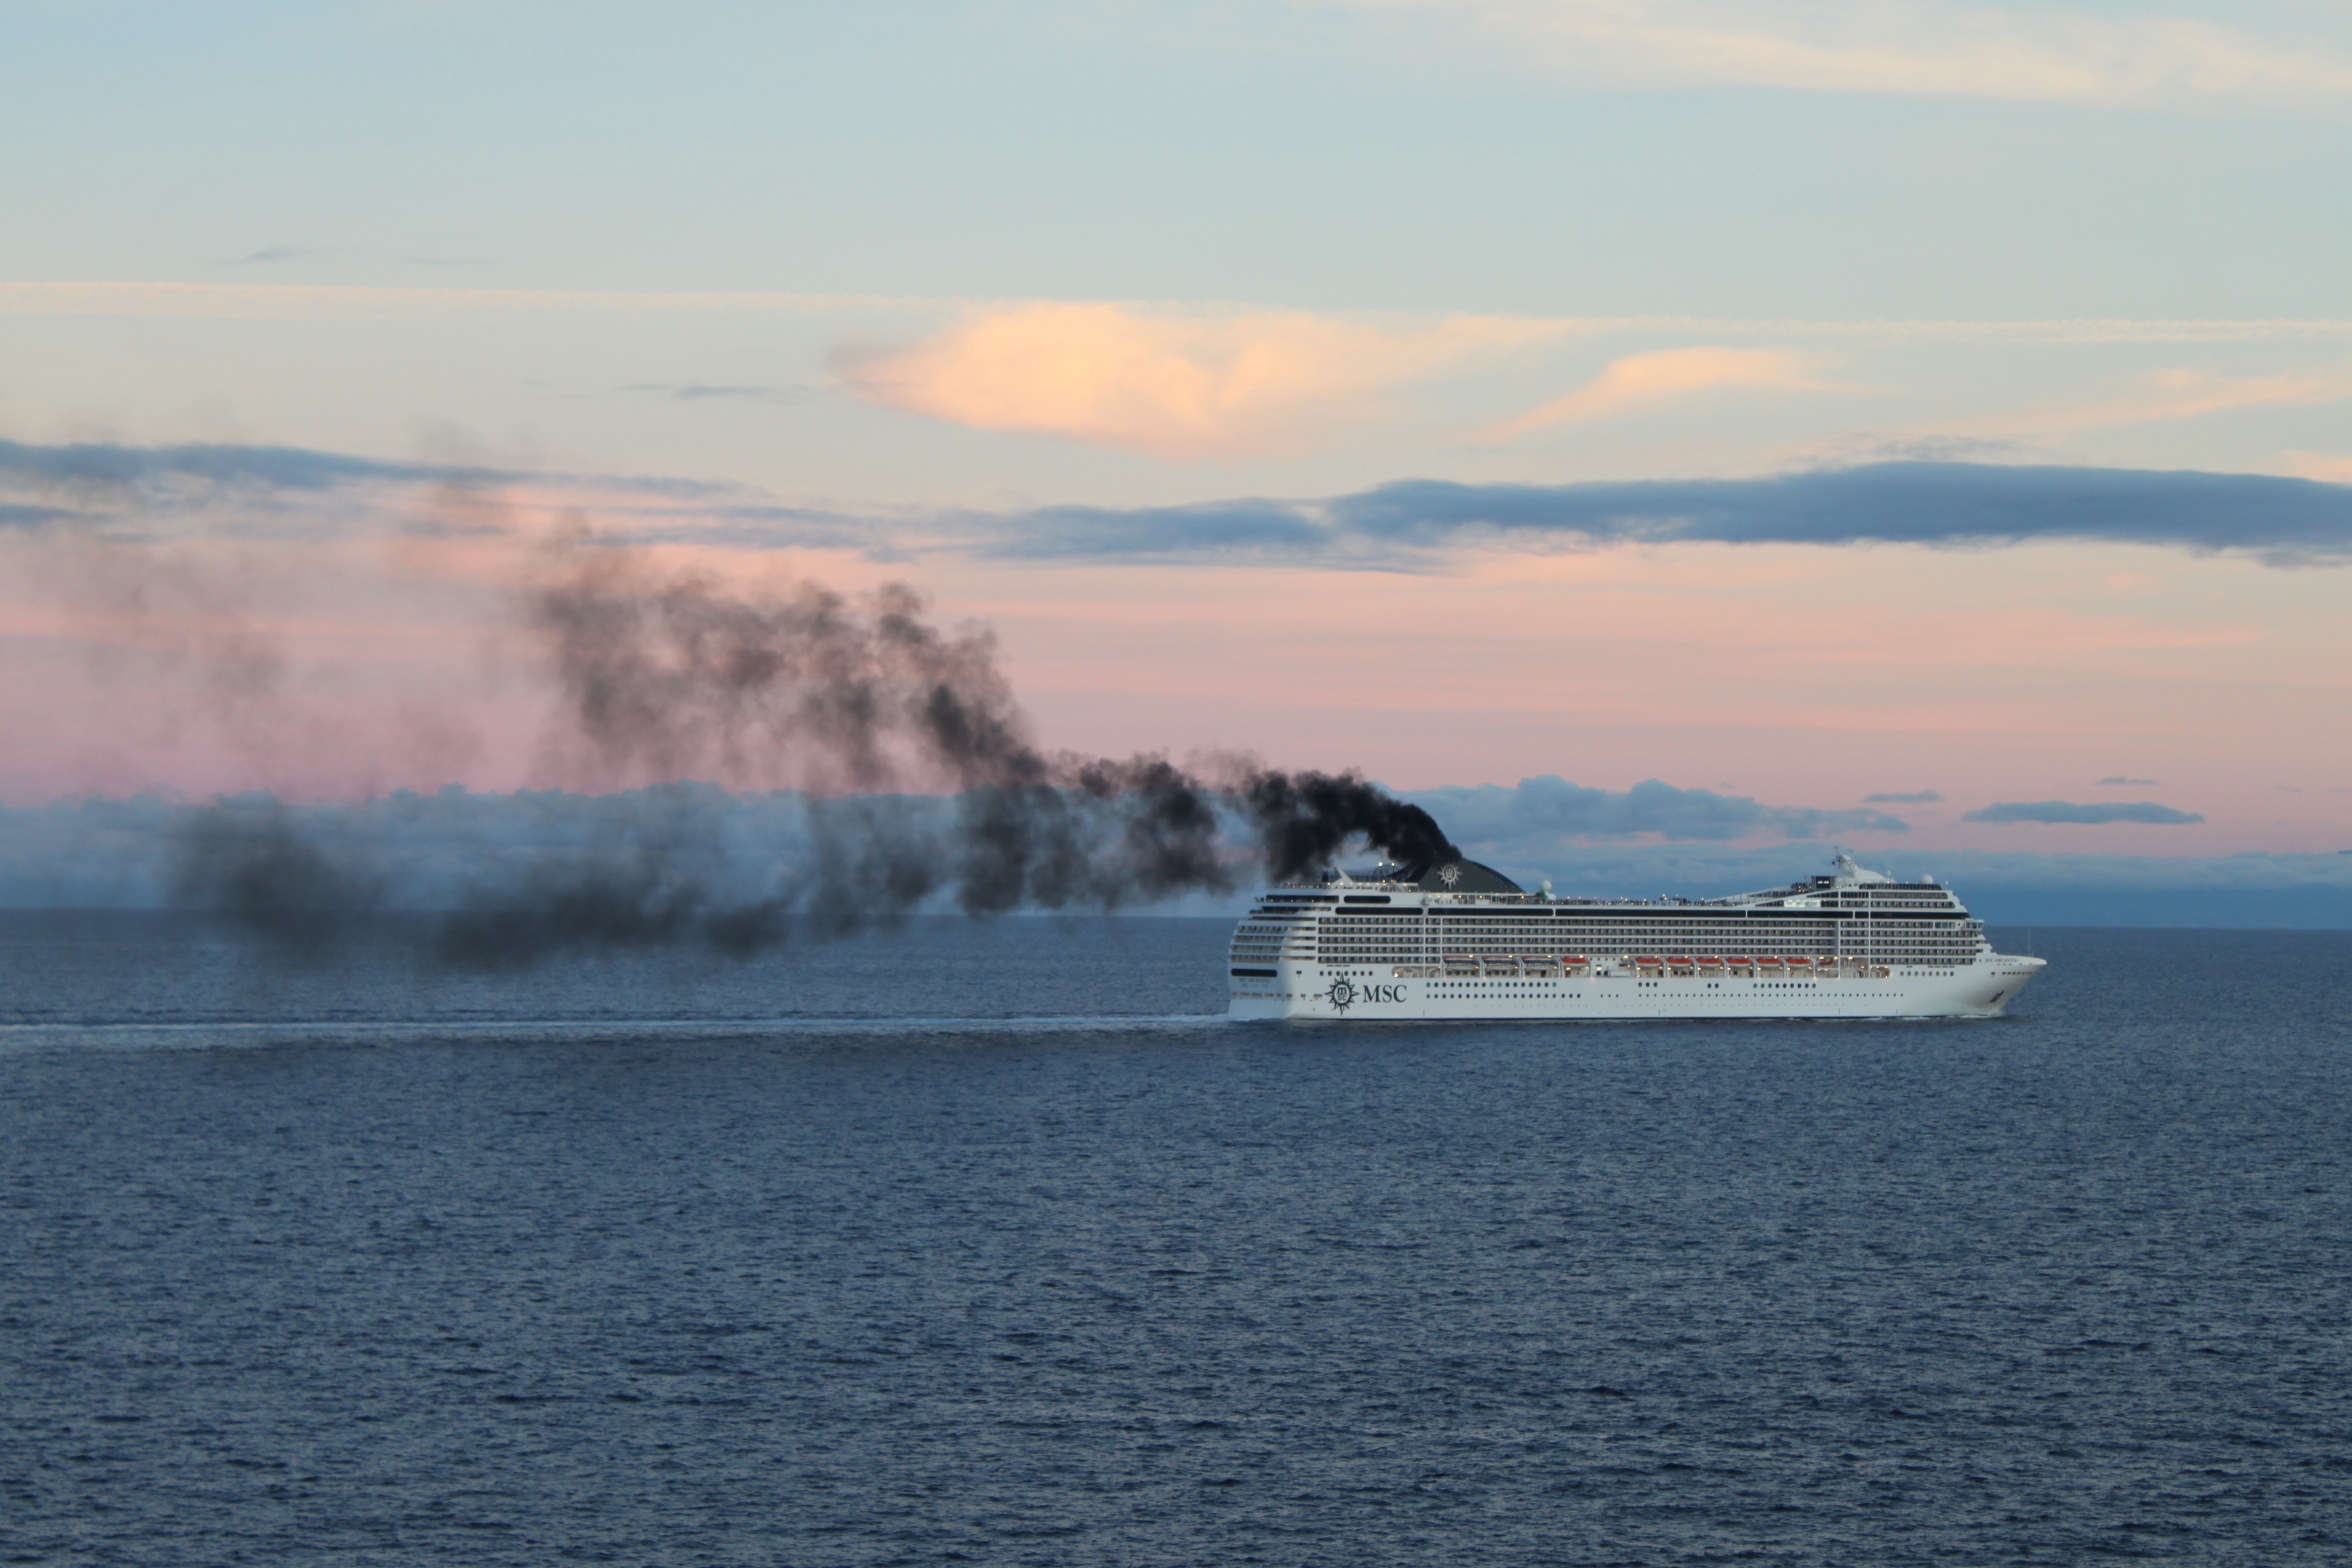 Traumurlaub Kreuzfahrtschiff? Naturschützer und führende Lungenärzte warnen vor hoher Abgasbelastung an Deck